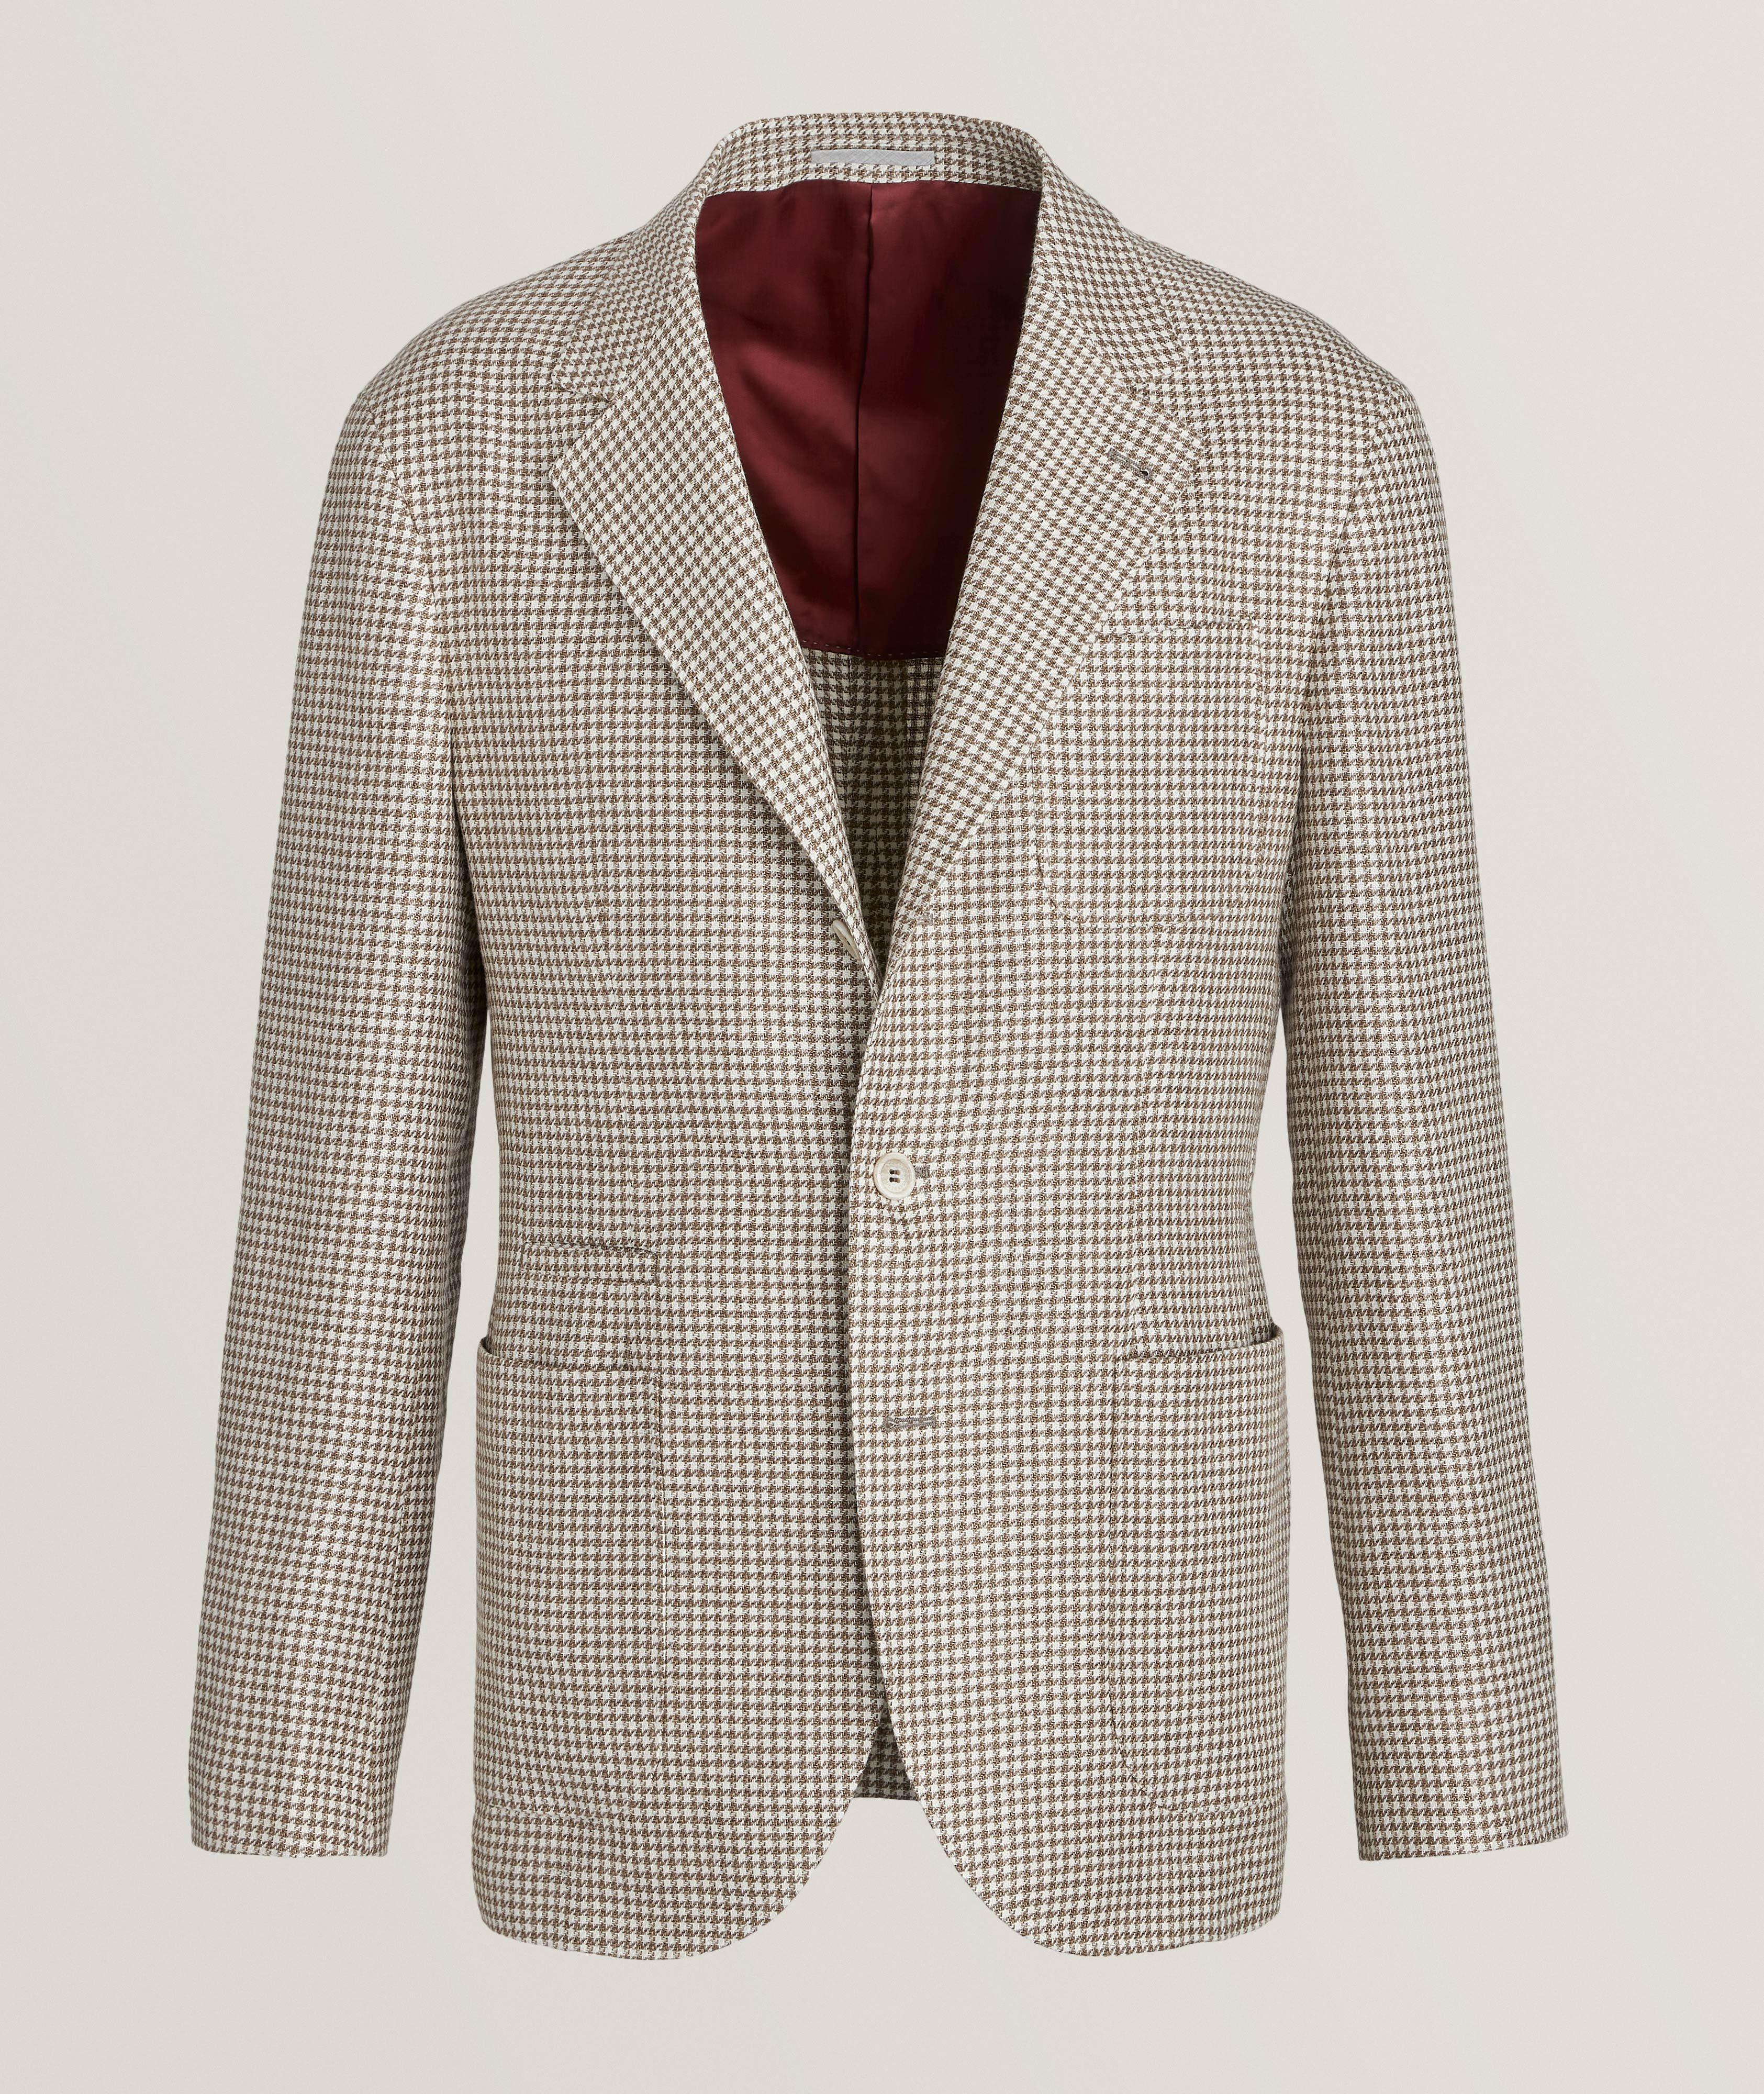 Brunello Cucinelli Houndstooth Linen, Wool & Silk Sport Jacket